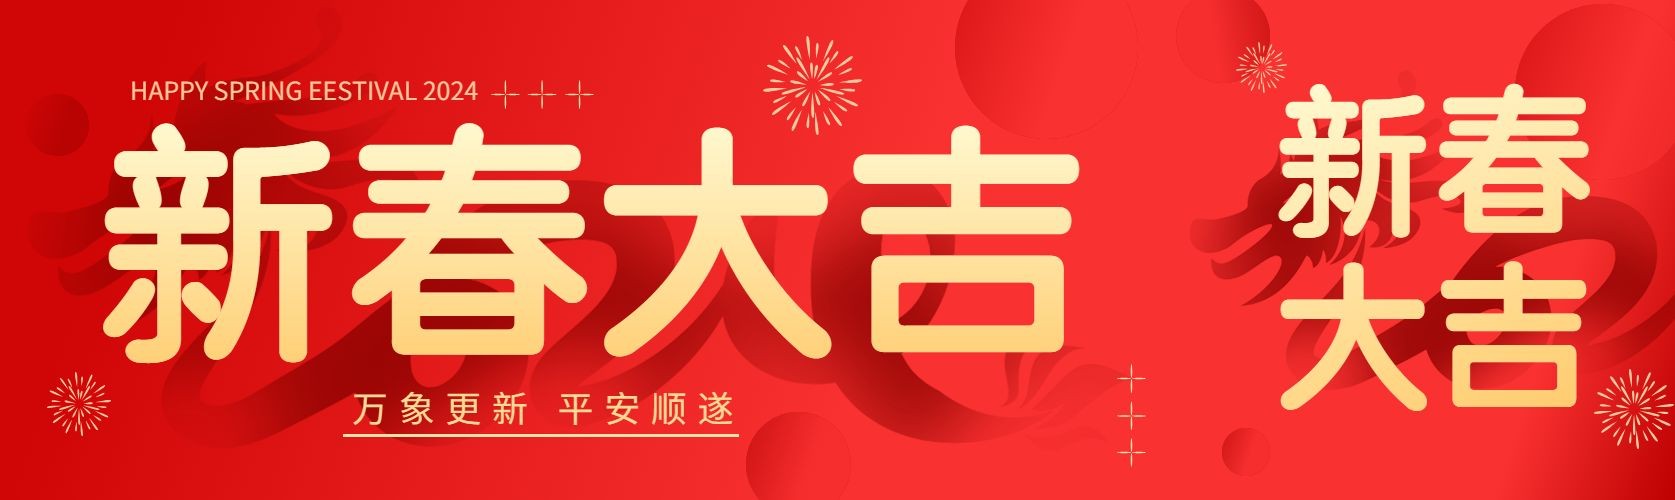 春节节日祝福喜庆公众号首次图